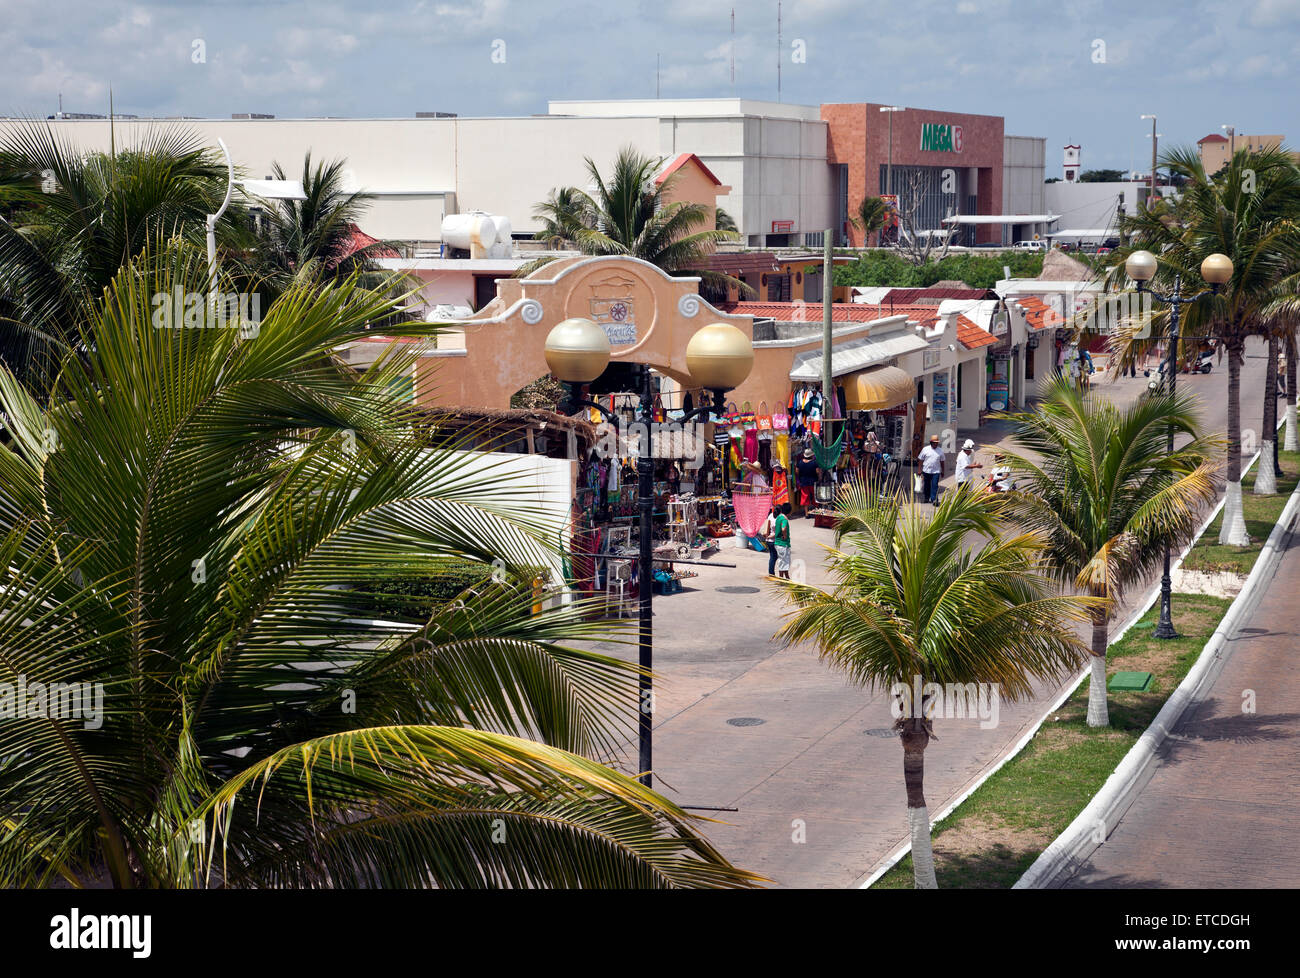 Cozumel, Messico: Vista di San Miguel zona fronte mare, vicino al terminal delle navi da crociera. Foto Stock